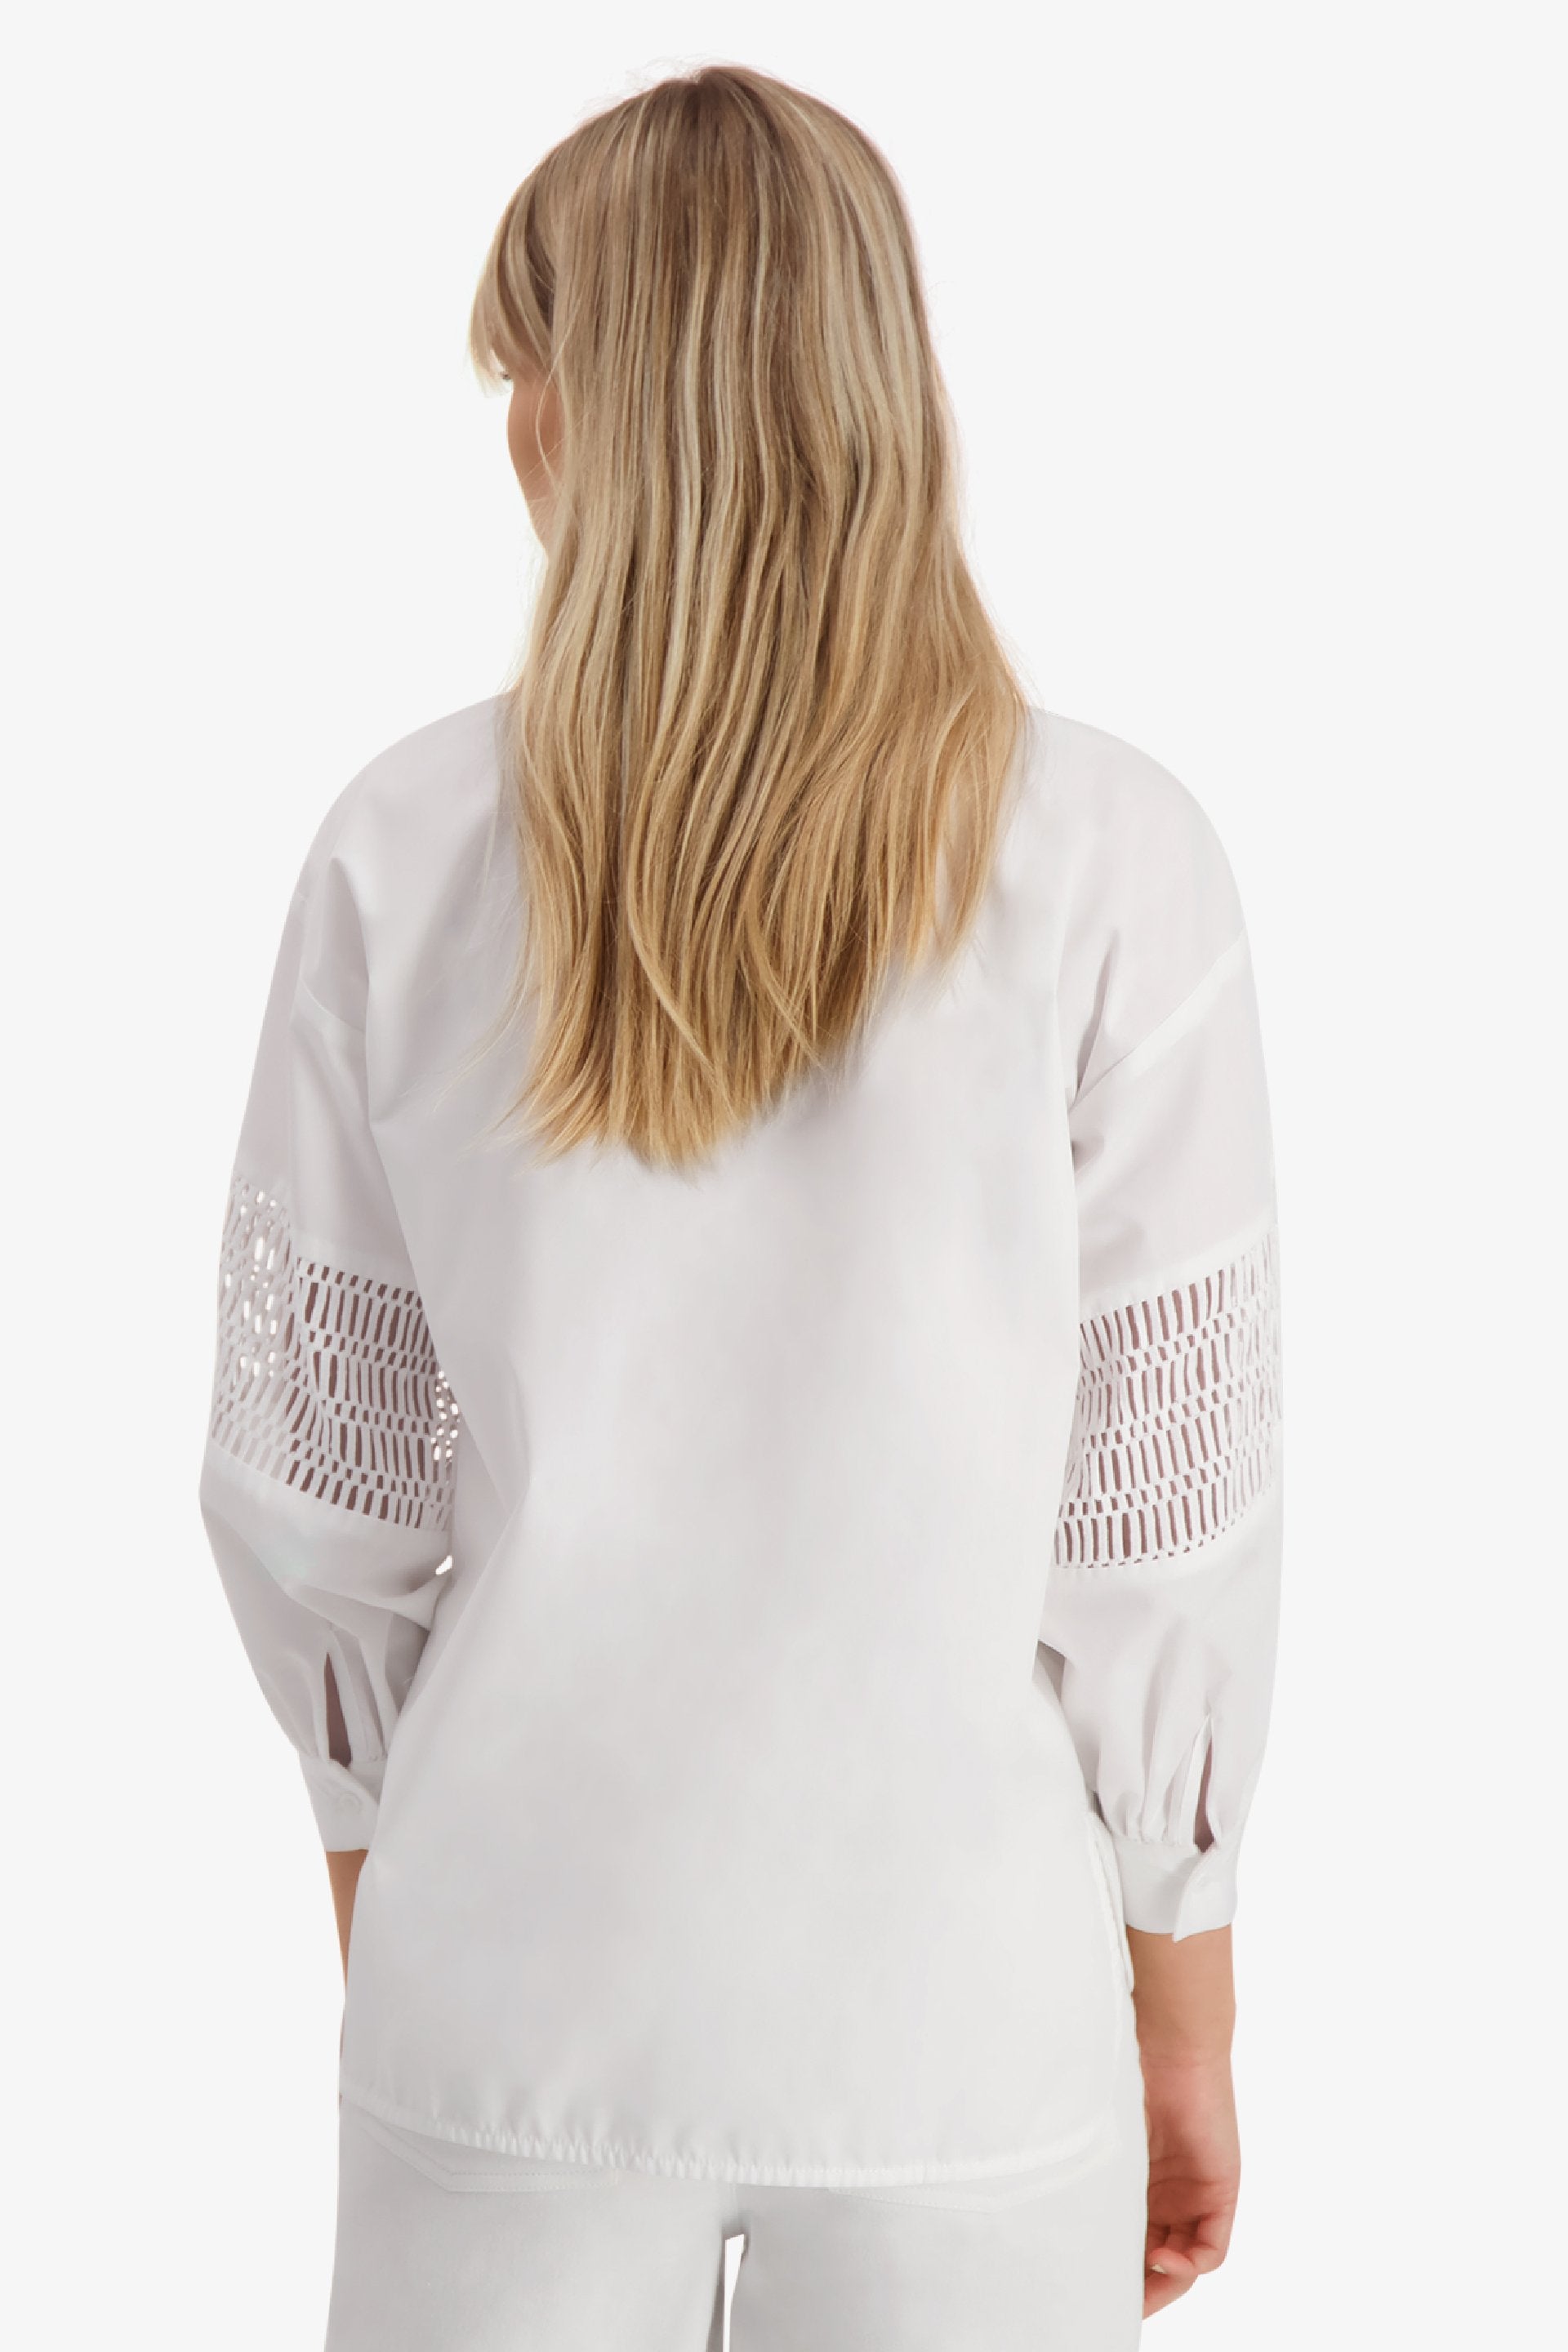 Puff Shirt - White - Camilla Pihl - T-skjorter & Topper - VILLOID.no